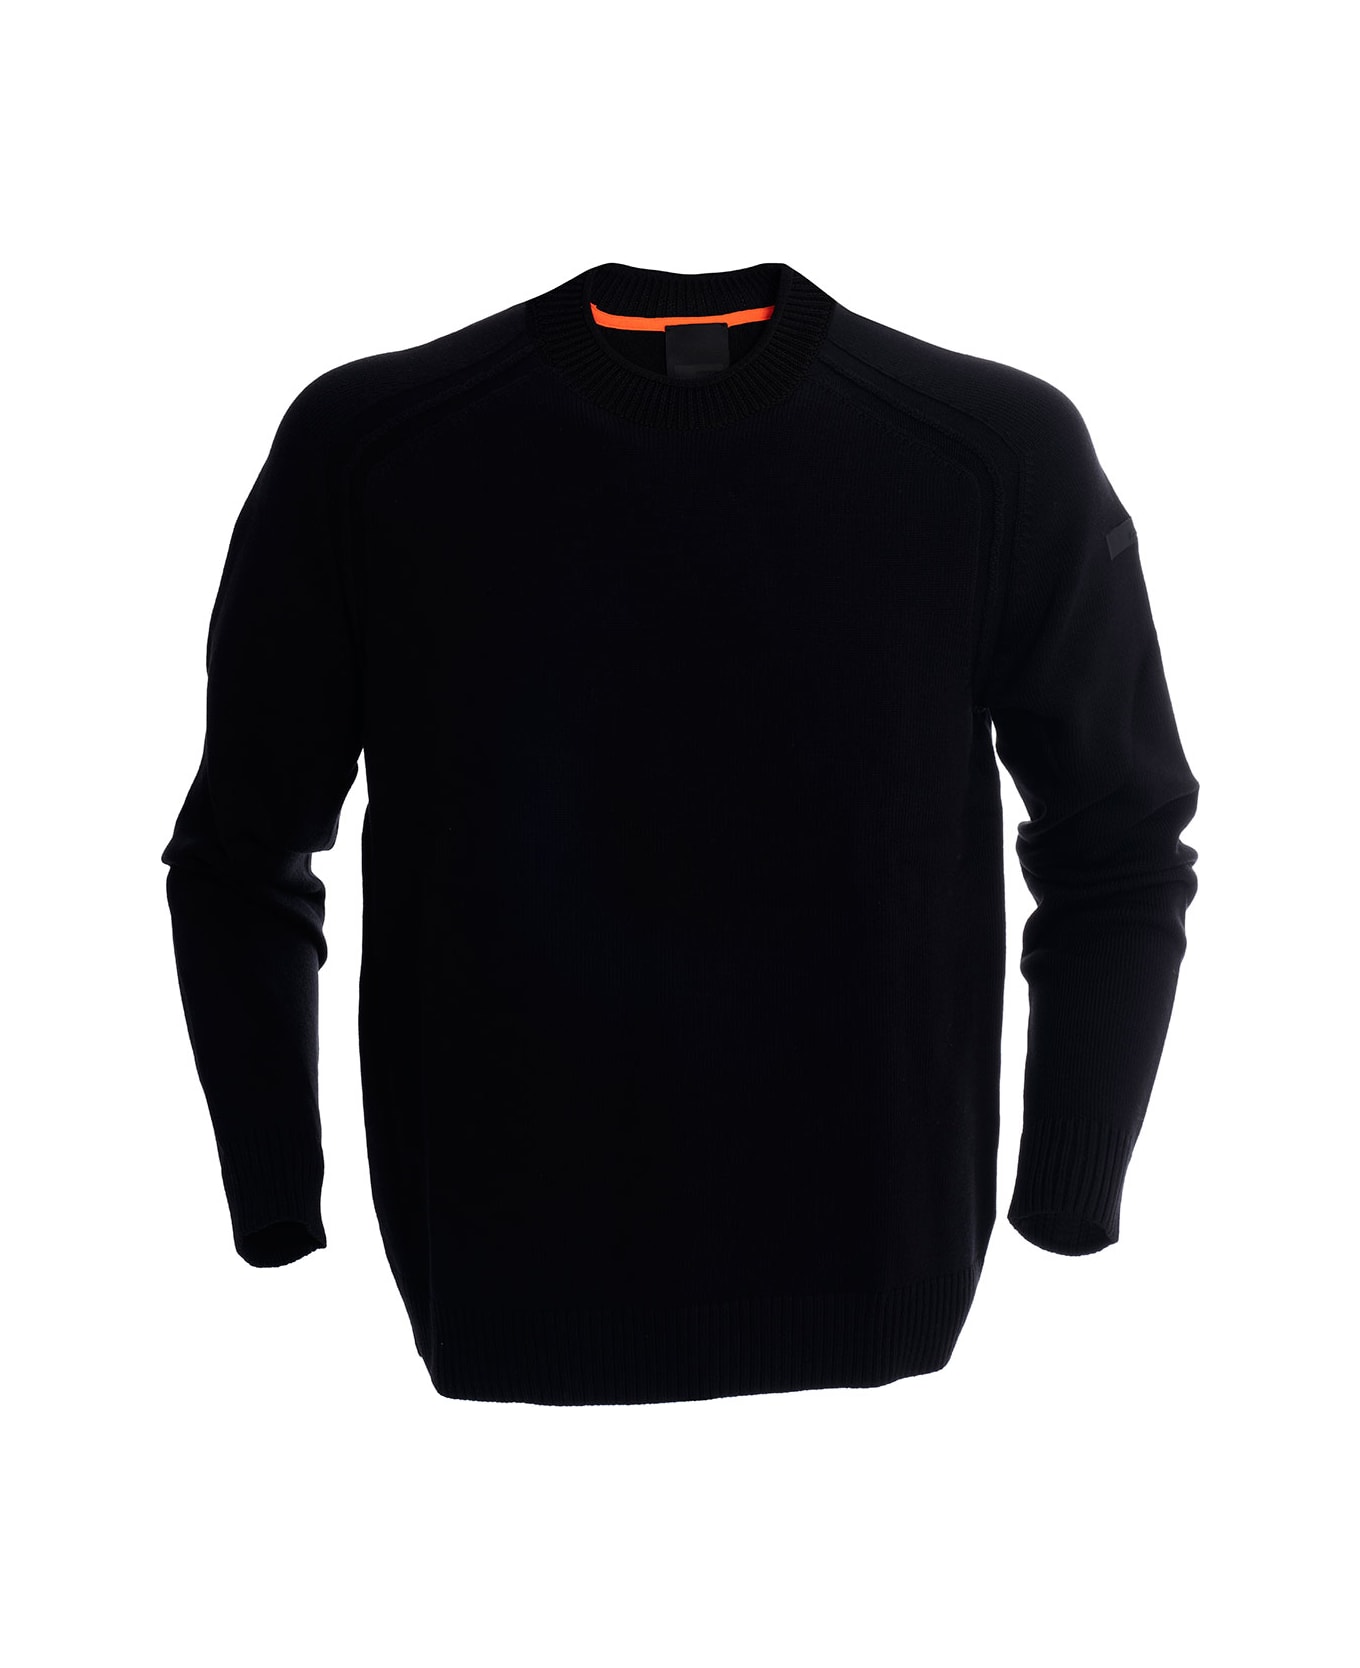 RRD - Roberto Ricci Design Cotton Sweater RRD - Roberto Ricci Design